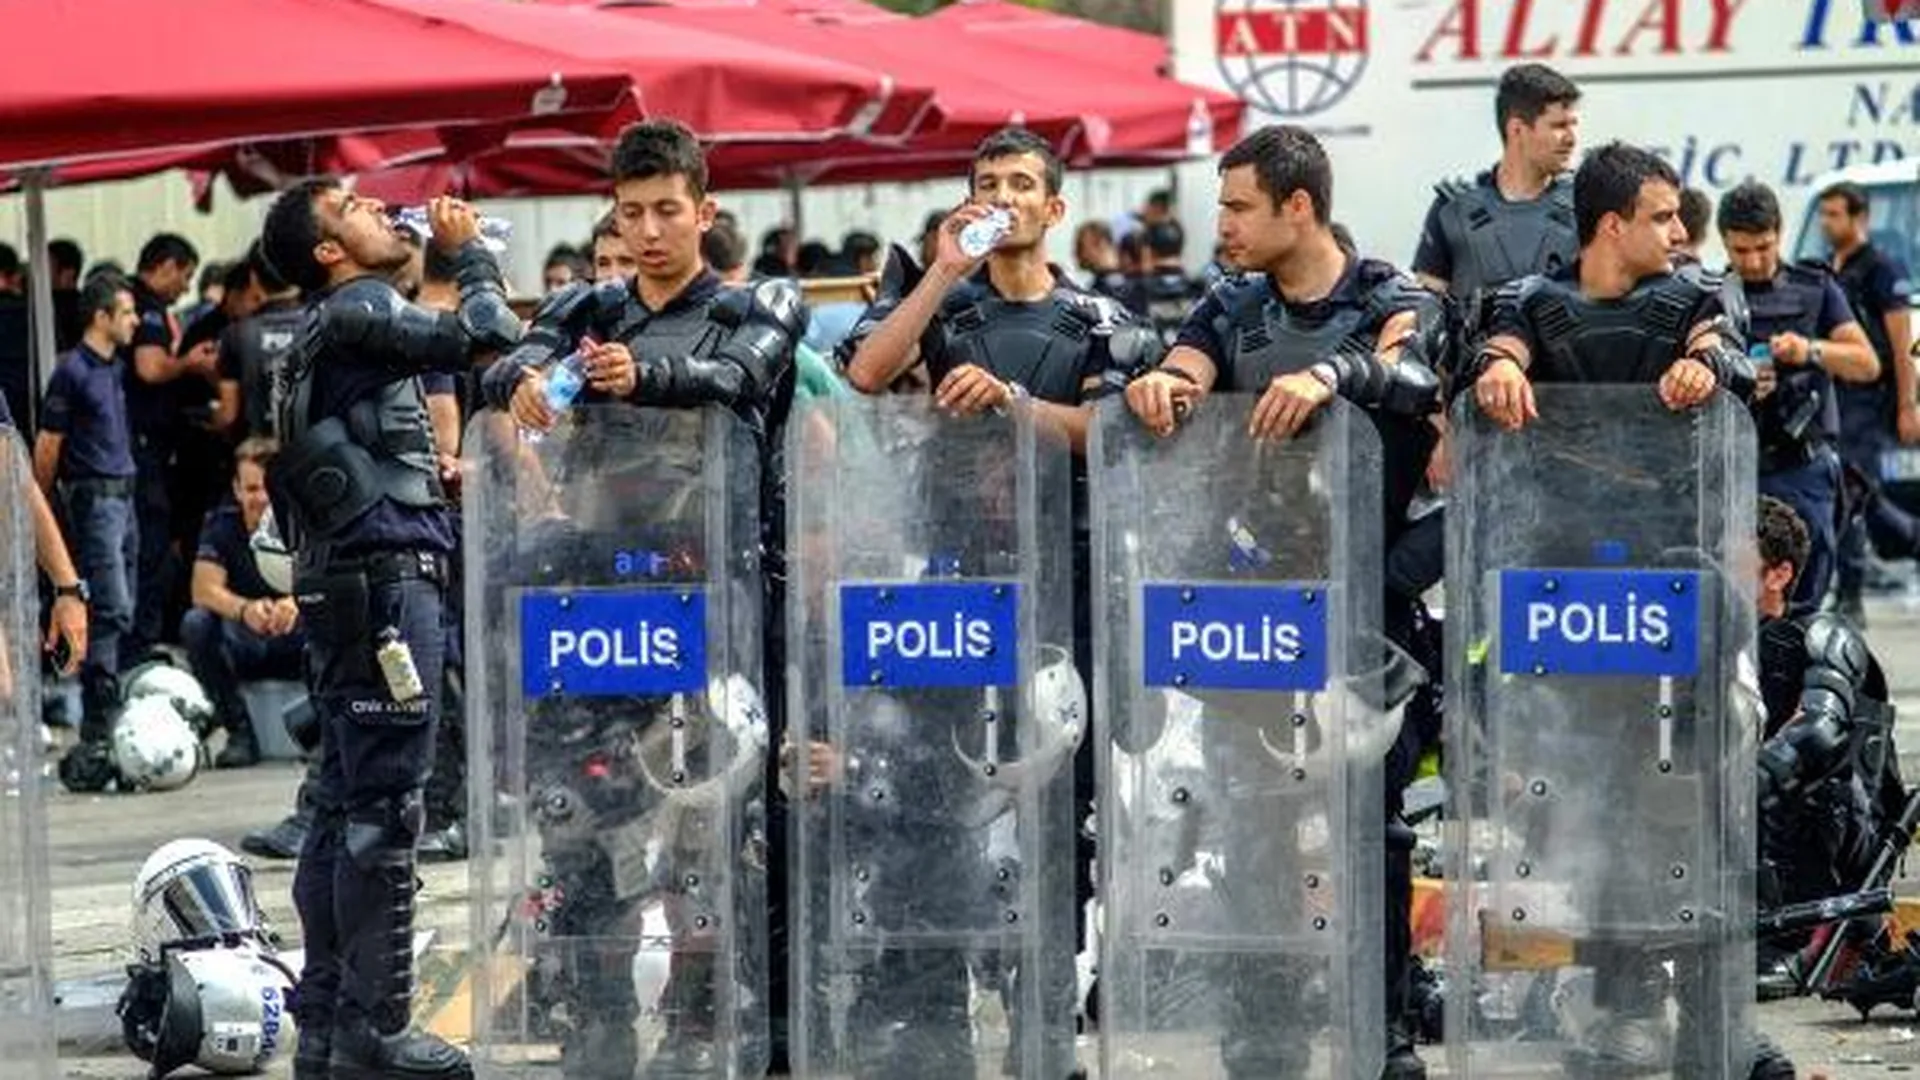 СМИ: власти Турции заявили, что взрыва в Анкаре не было